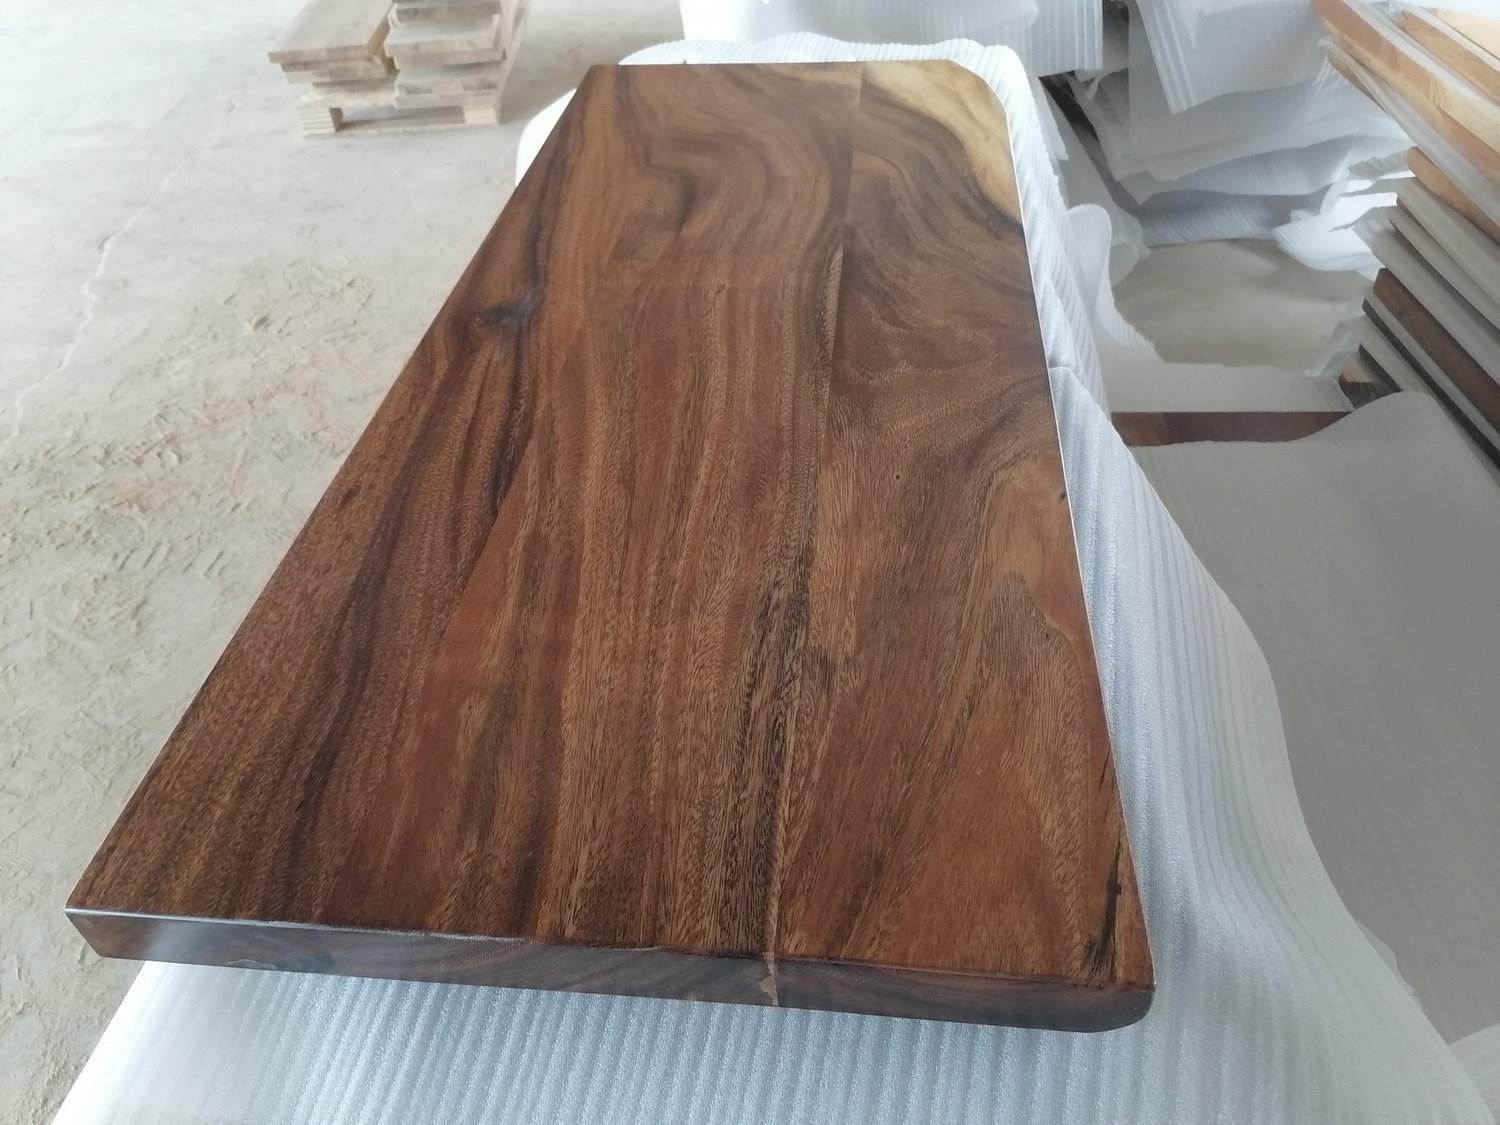 Live edge suar wood slab vanity table top